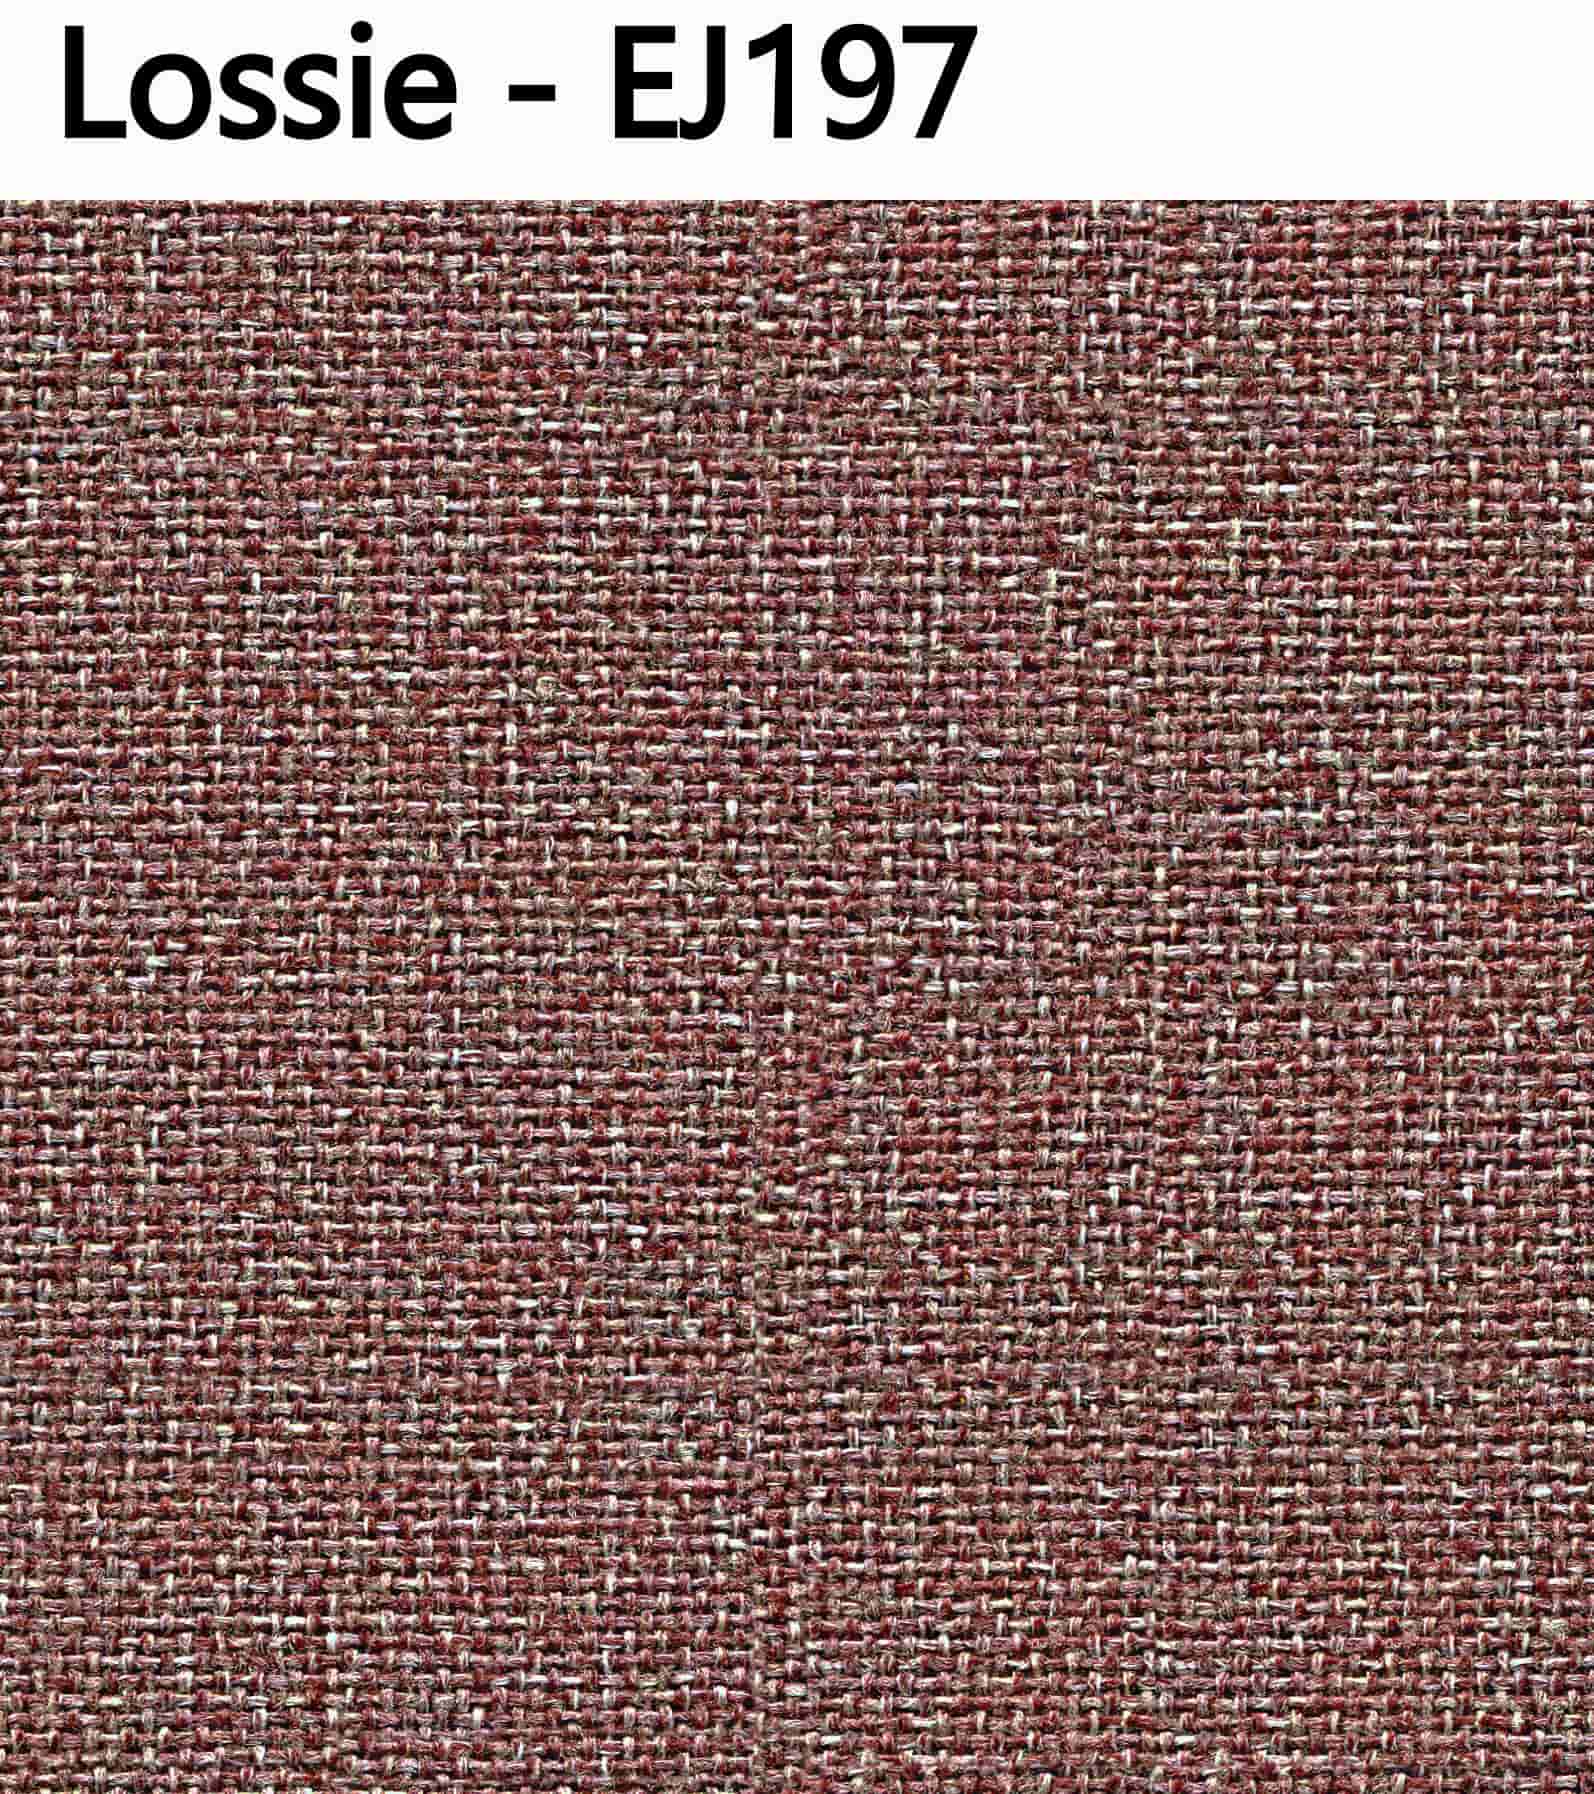 Lossie